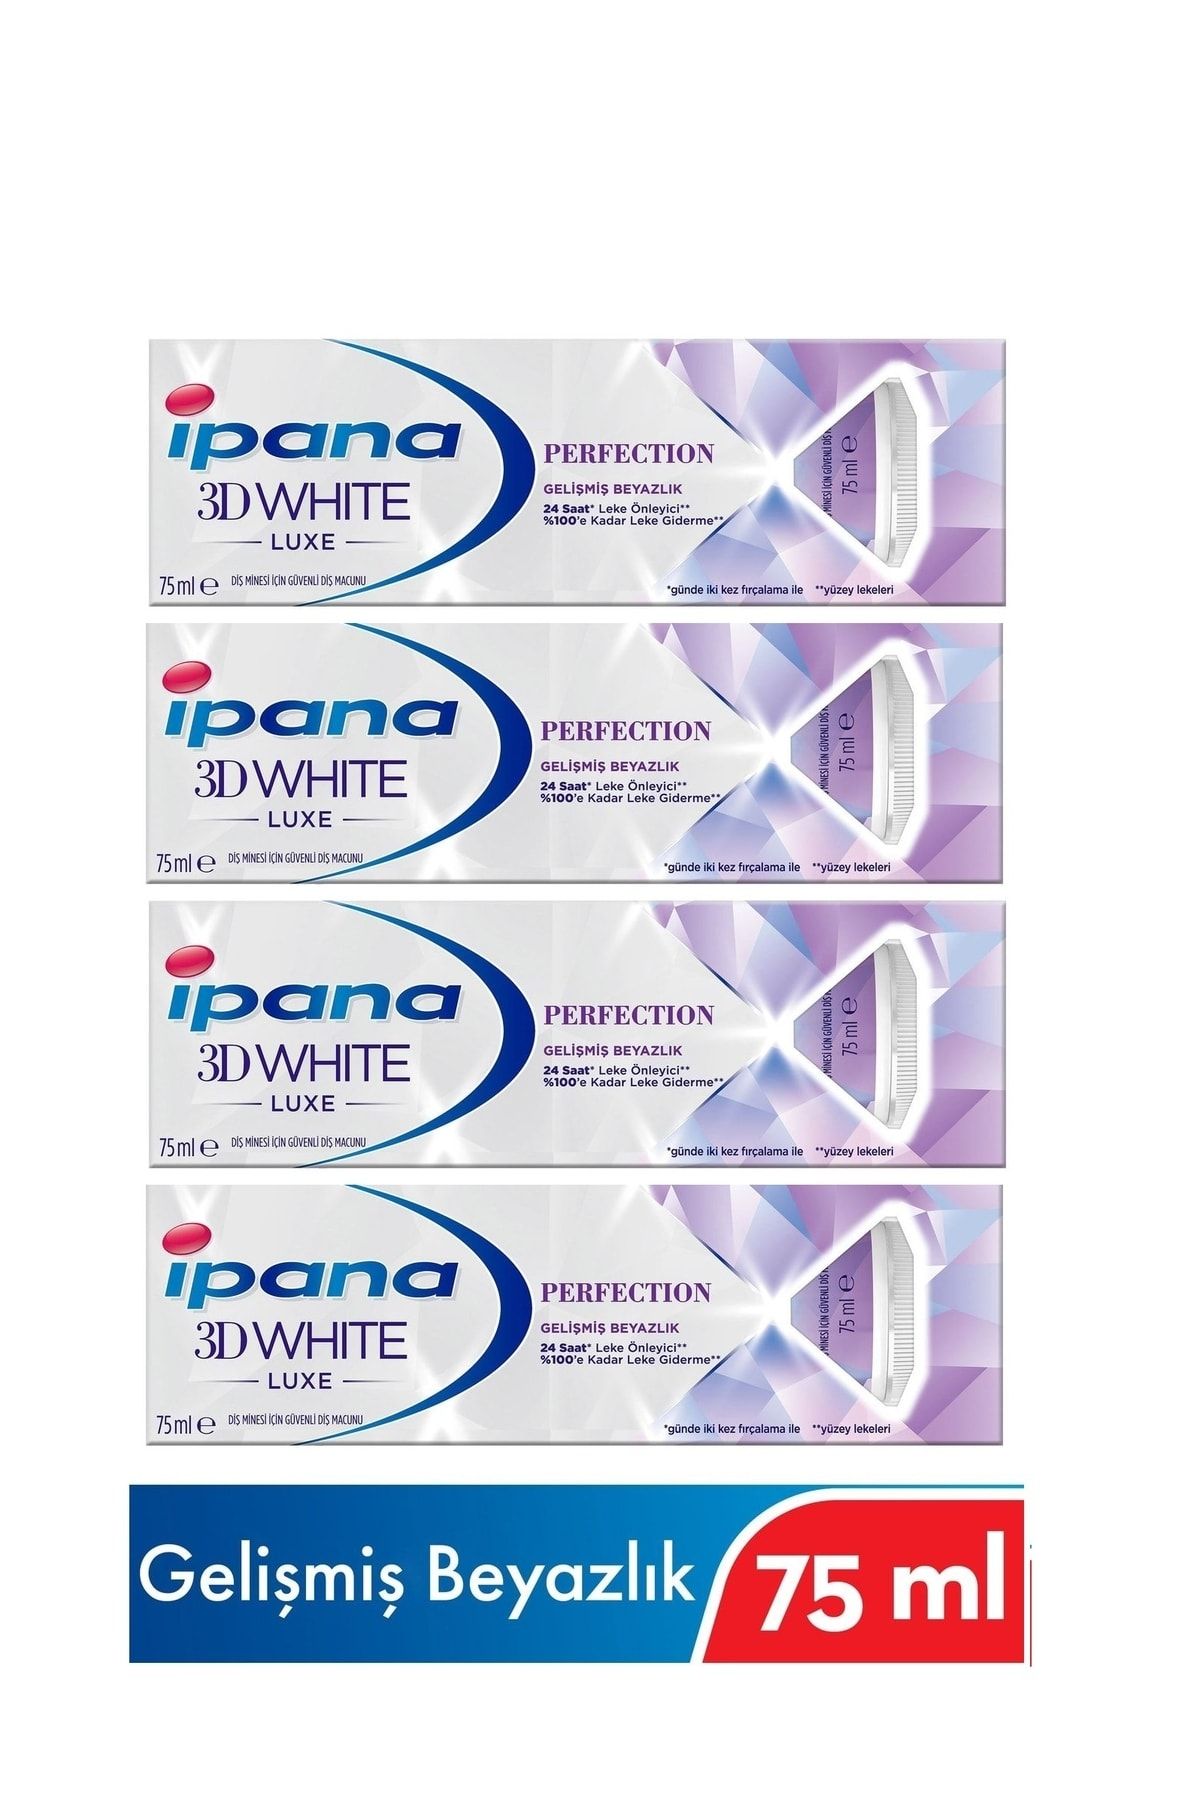 İpana 3d Whıte Luxe Perfection Gelişmiş Beyazlık Diş Macunu 75 Ml X 4 Adet